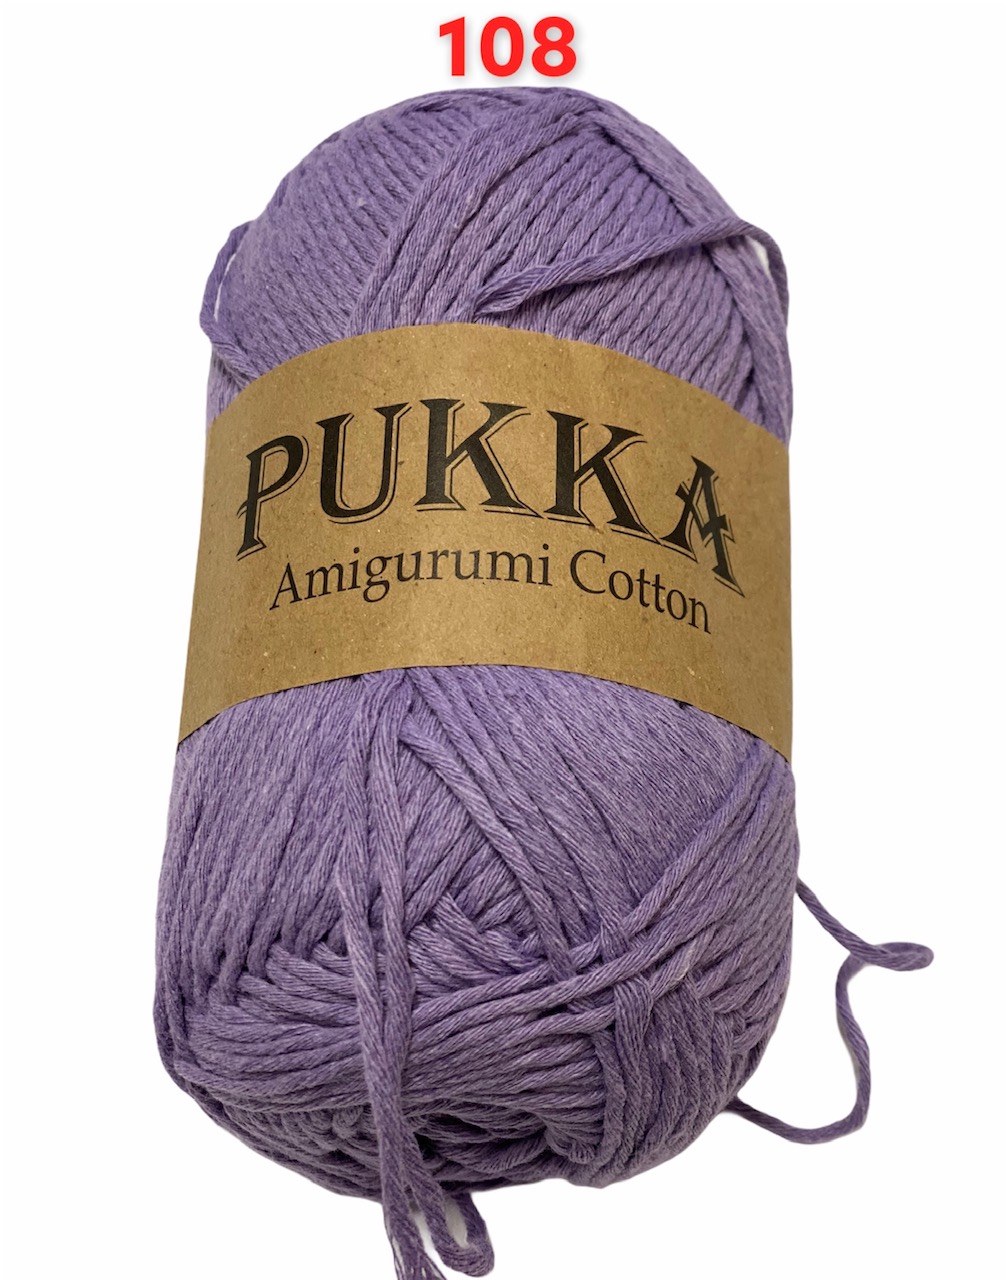 PUKKA Amigurumi Cotton 100g,108